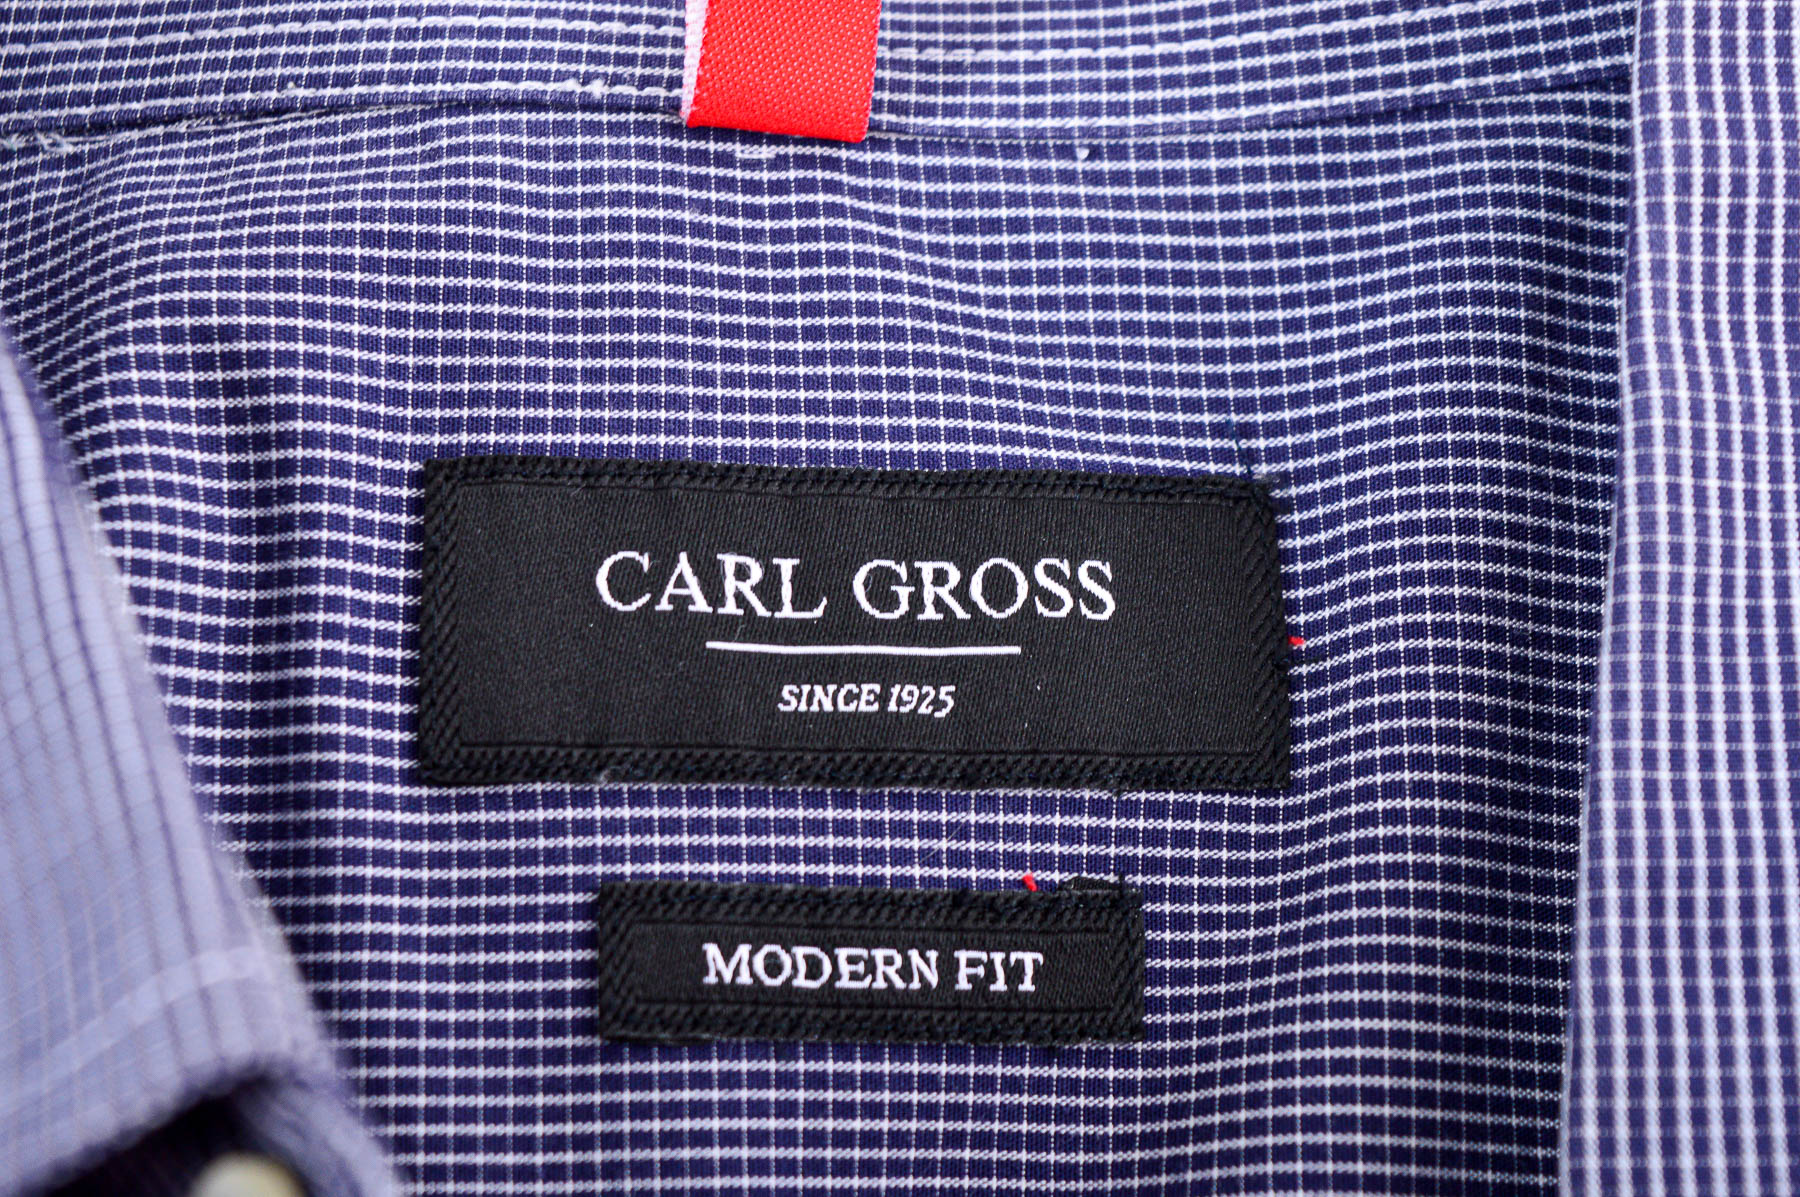 Men's shirt - Carl Gross - 2